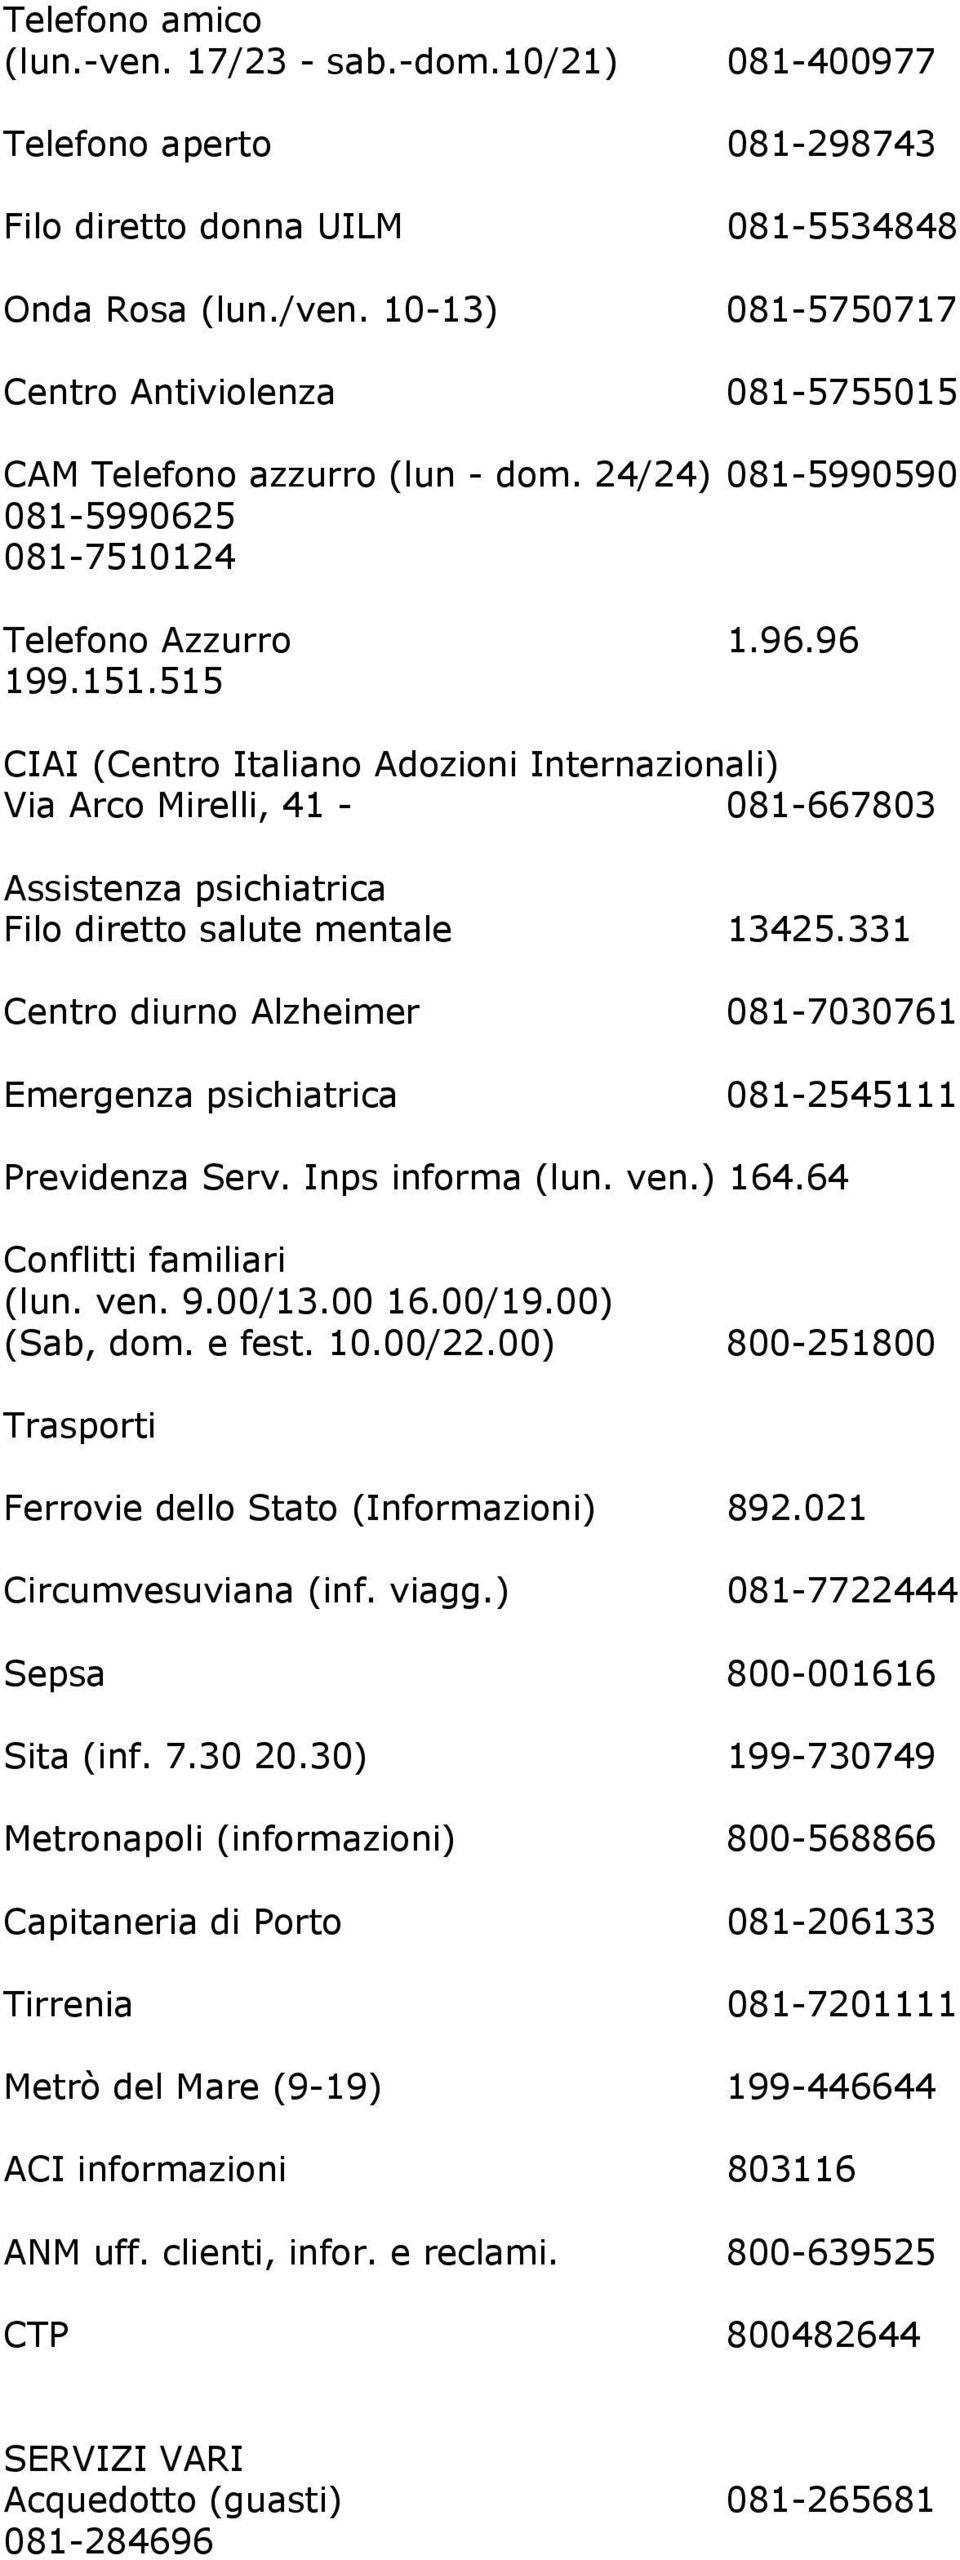 515 CIAI (Centro Italiano Adozioni Internazionali) Via Arco Mirelli, 41-081-667803 Assistenza psichiatrica Filo diretto salute mentale 13425.